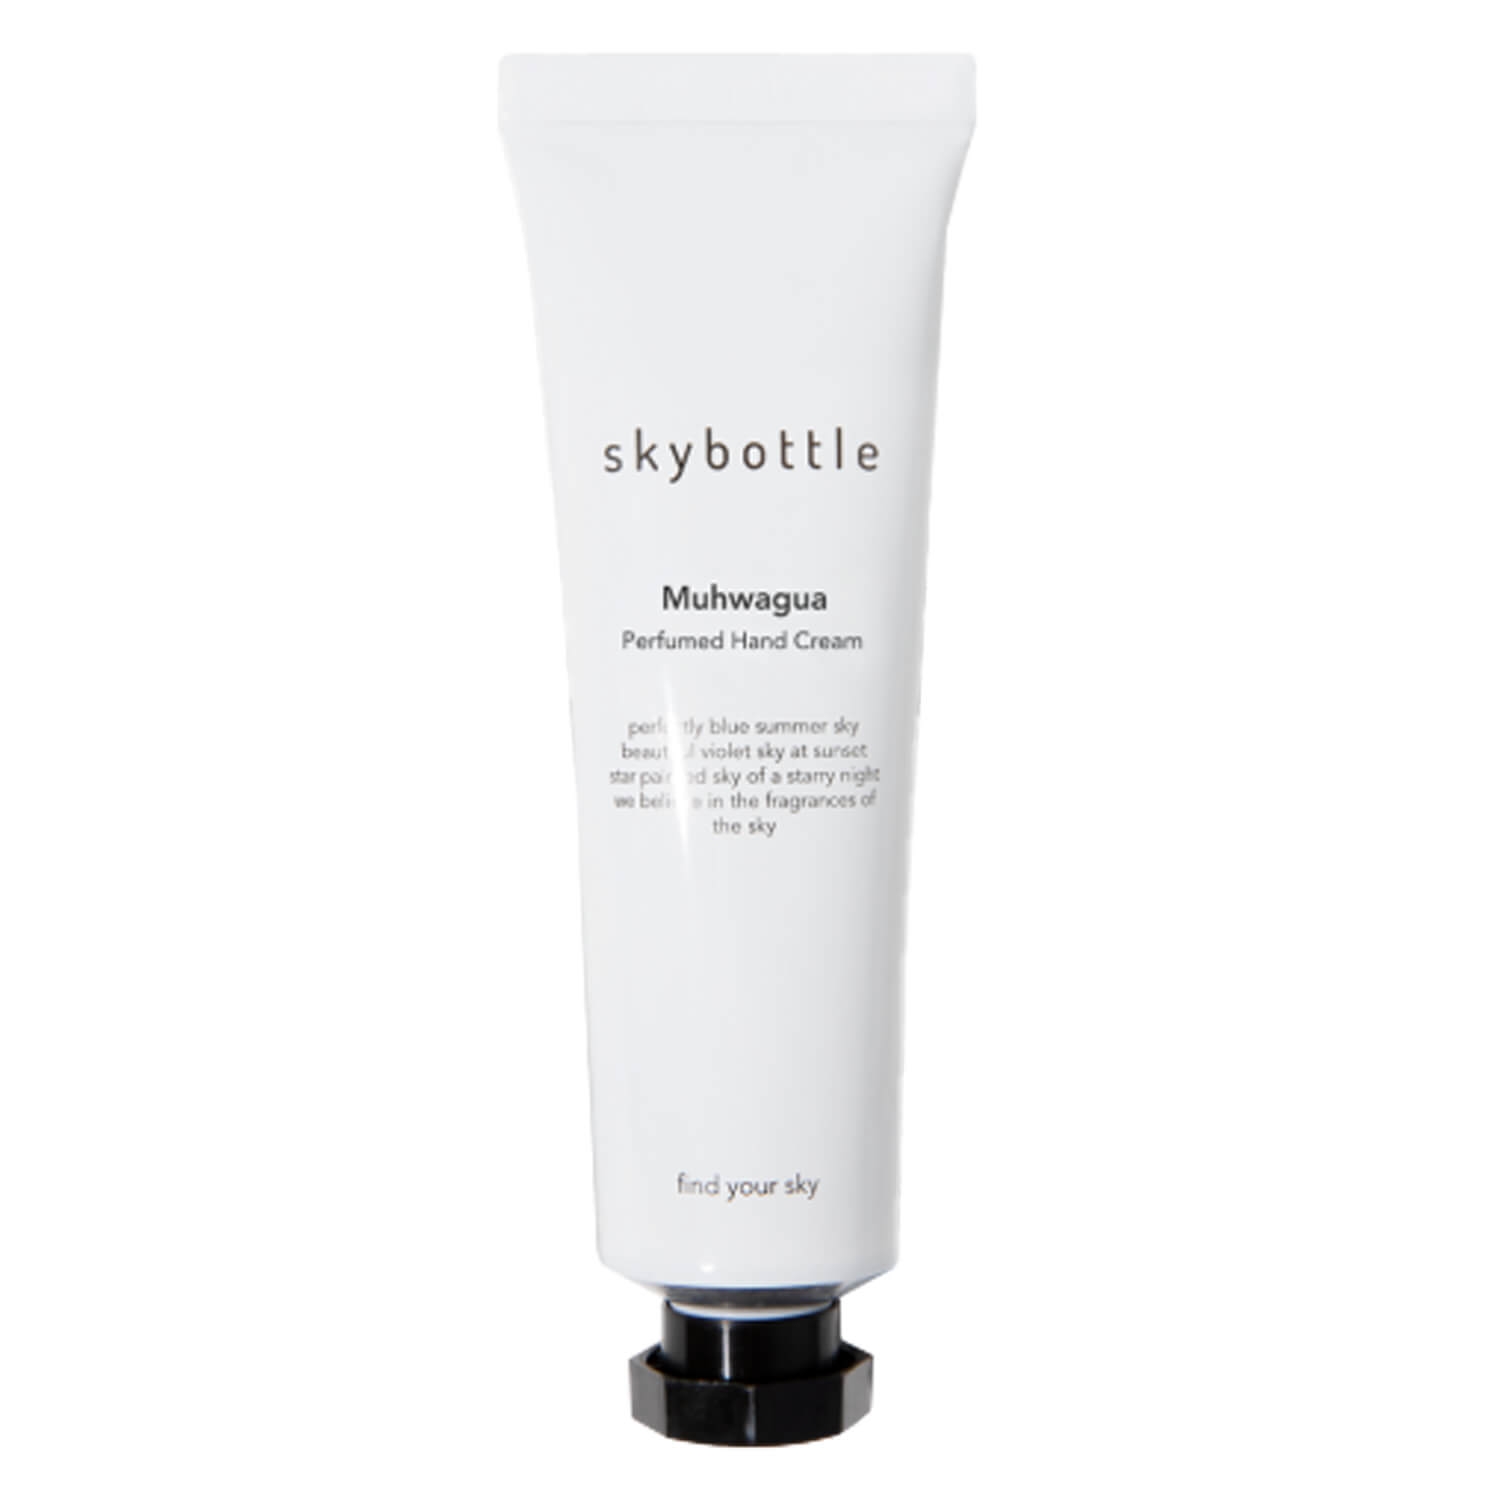 Produktbild von Skybottle - Muhwagua Perfumed Hand Cream